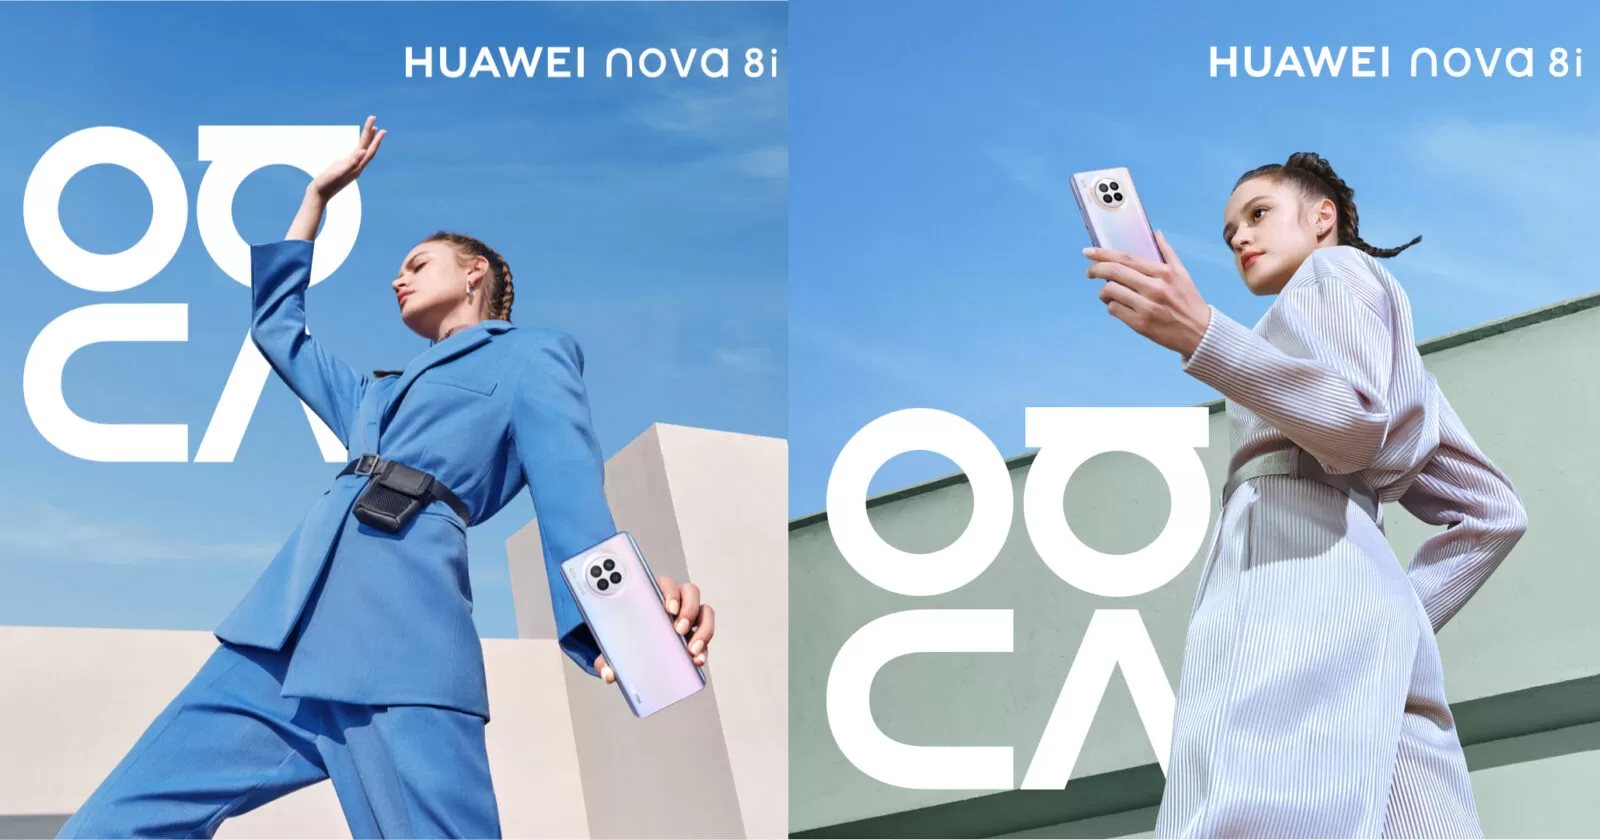 nova | Huawei | แชร์ไกด์ไลน์ 4 แฟชั่นเซ็ตสุดปั๊วะ ถ่าย Photoshoot อวดโซเชียล ให้เหมือนมือโปรลงนิตยสารด้วย HUAWEI nova 8i